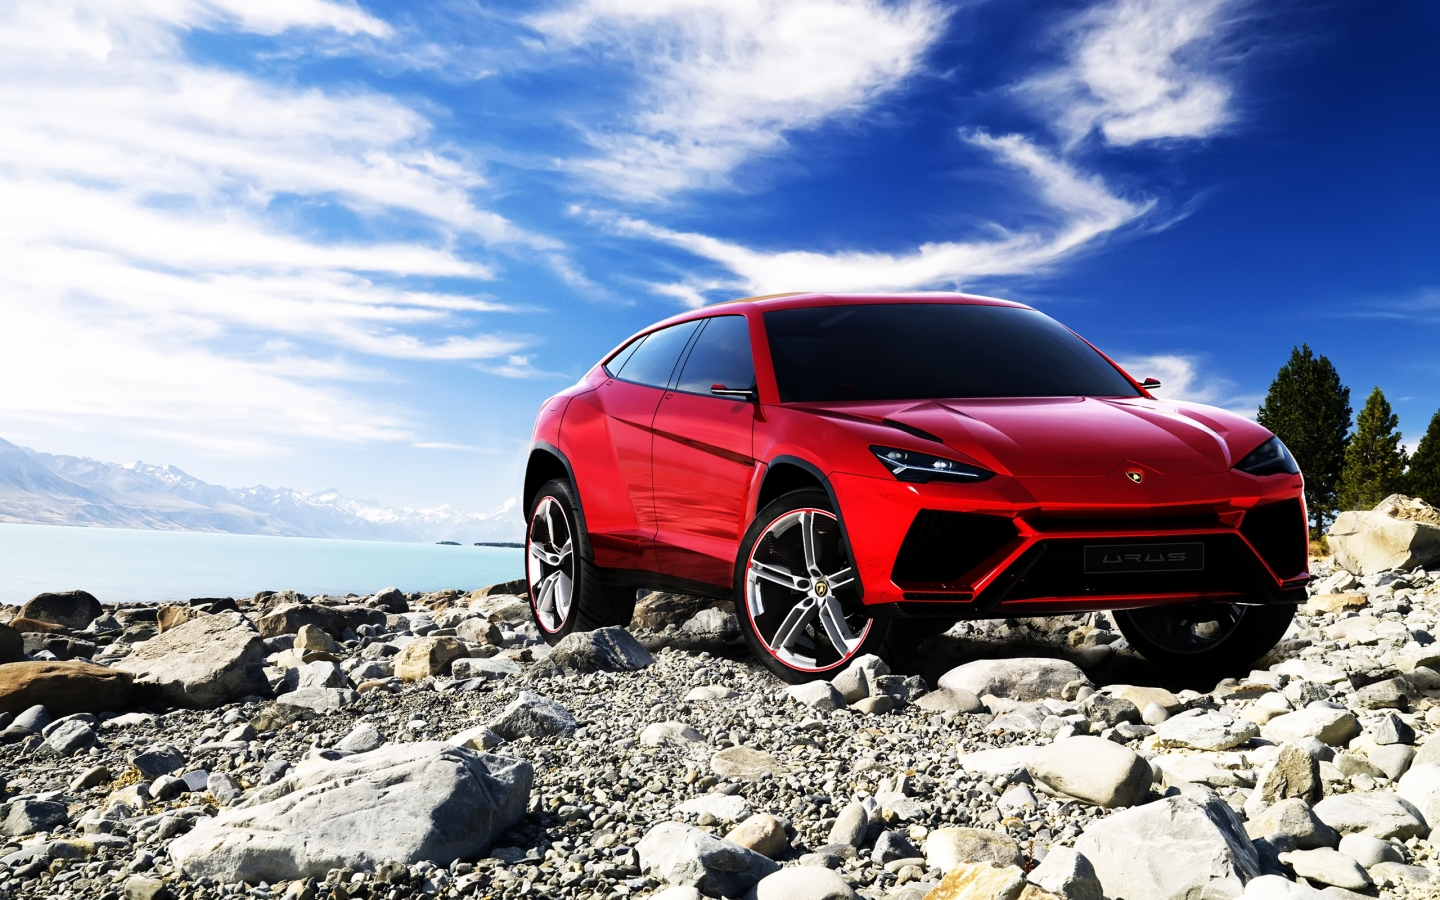 Lamborghini Urus Concept for 1440 x 900 widescreen resolution